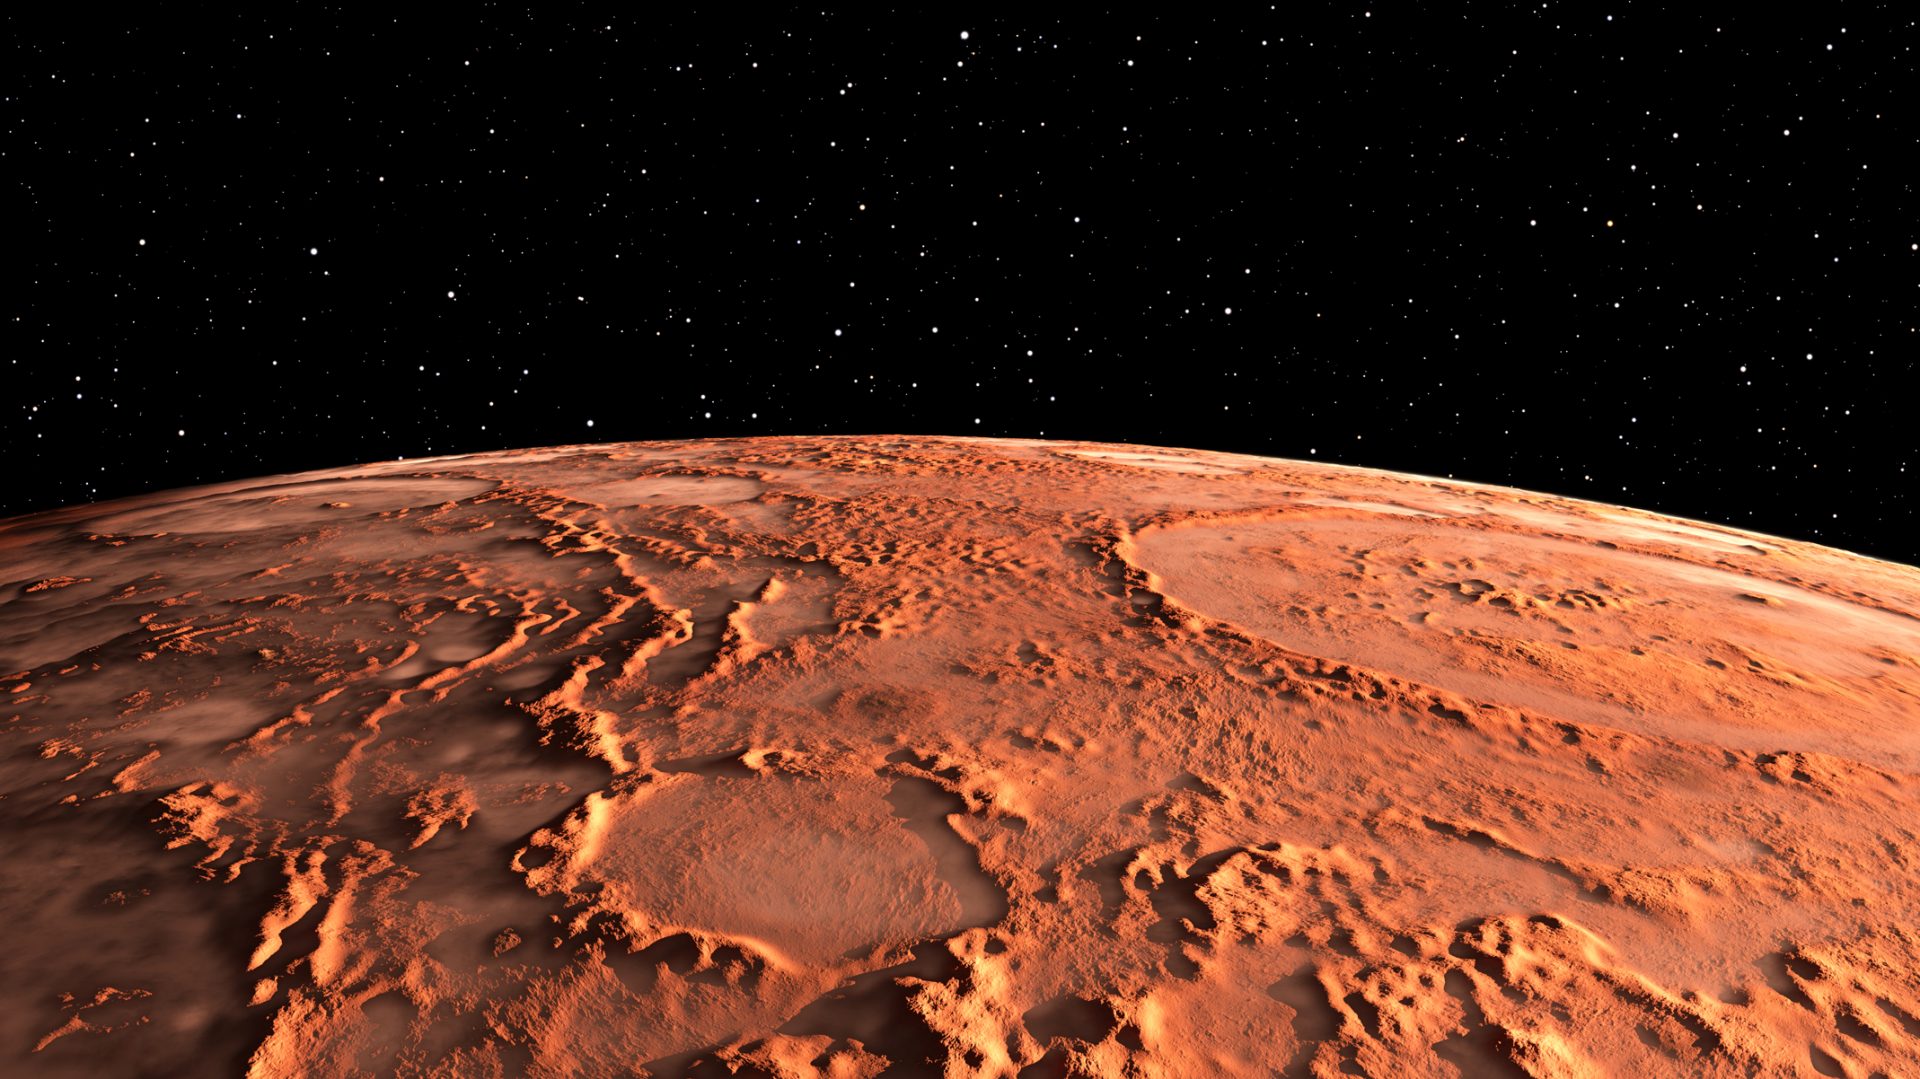 Un viaje a Marte no es para cualquiera según dice Elon Musk